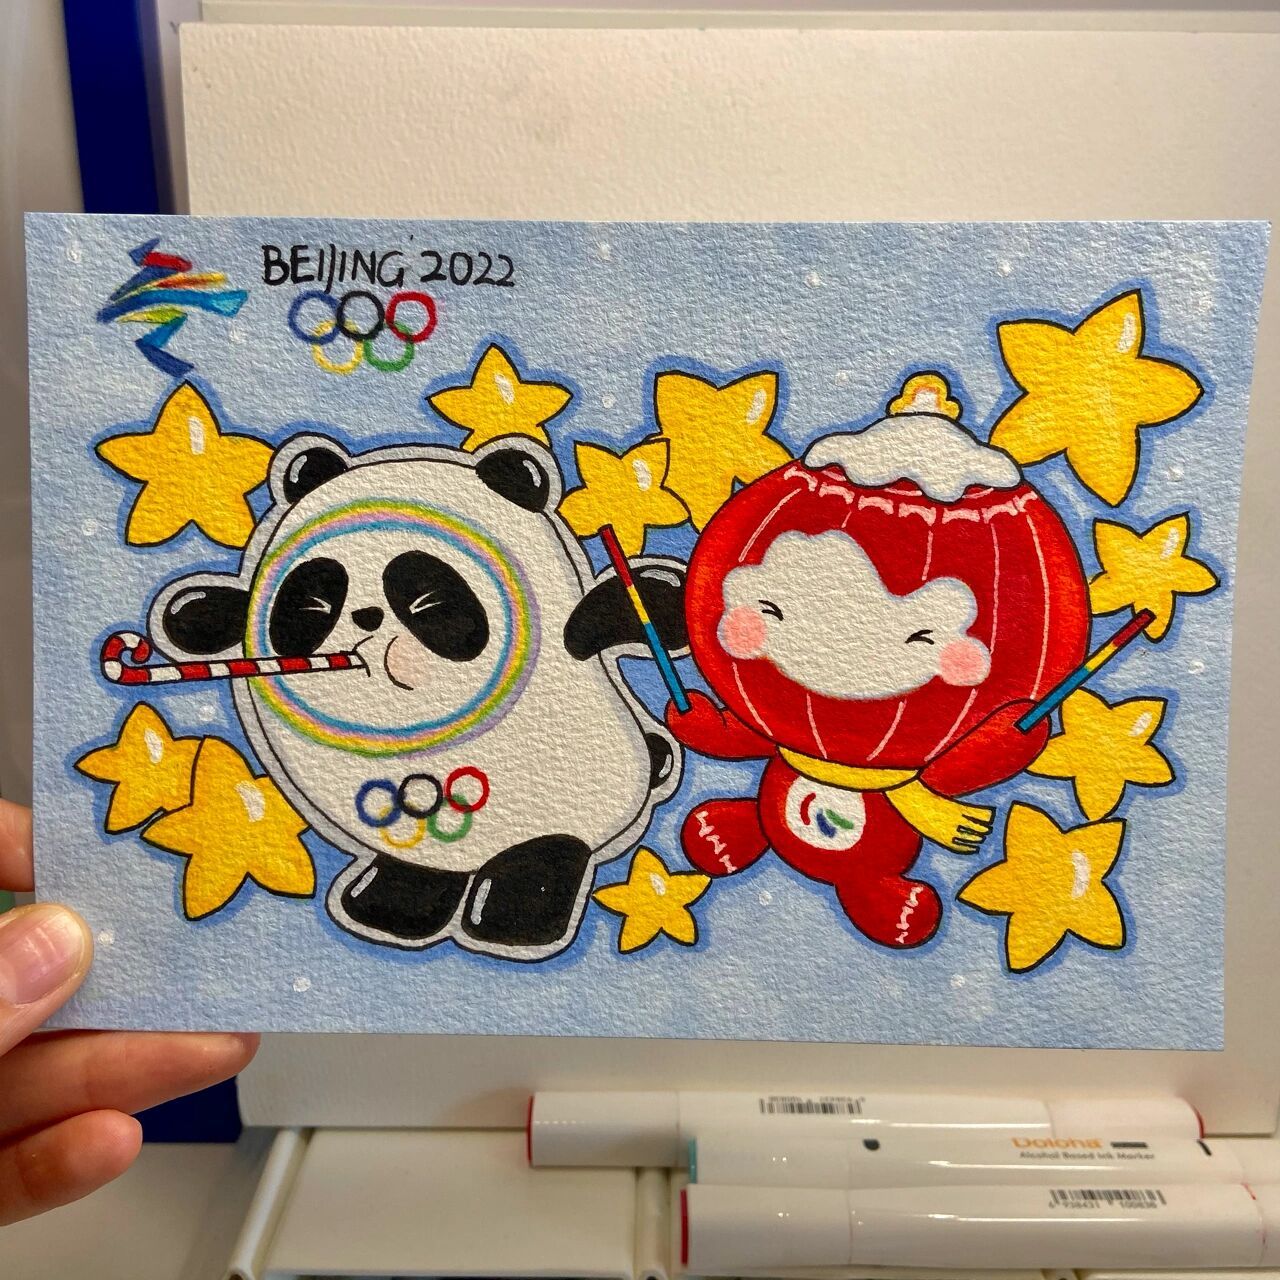 2022冬奥会卡片制作图片